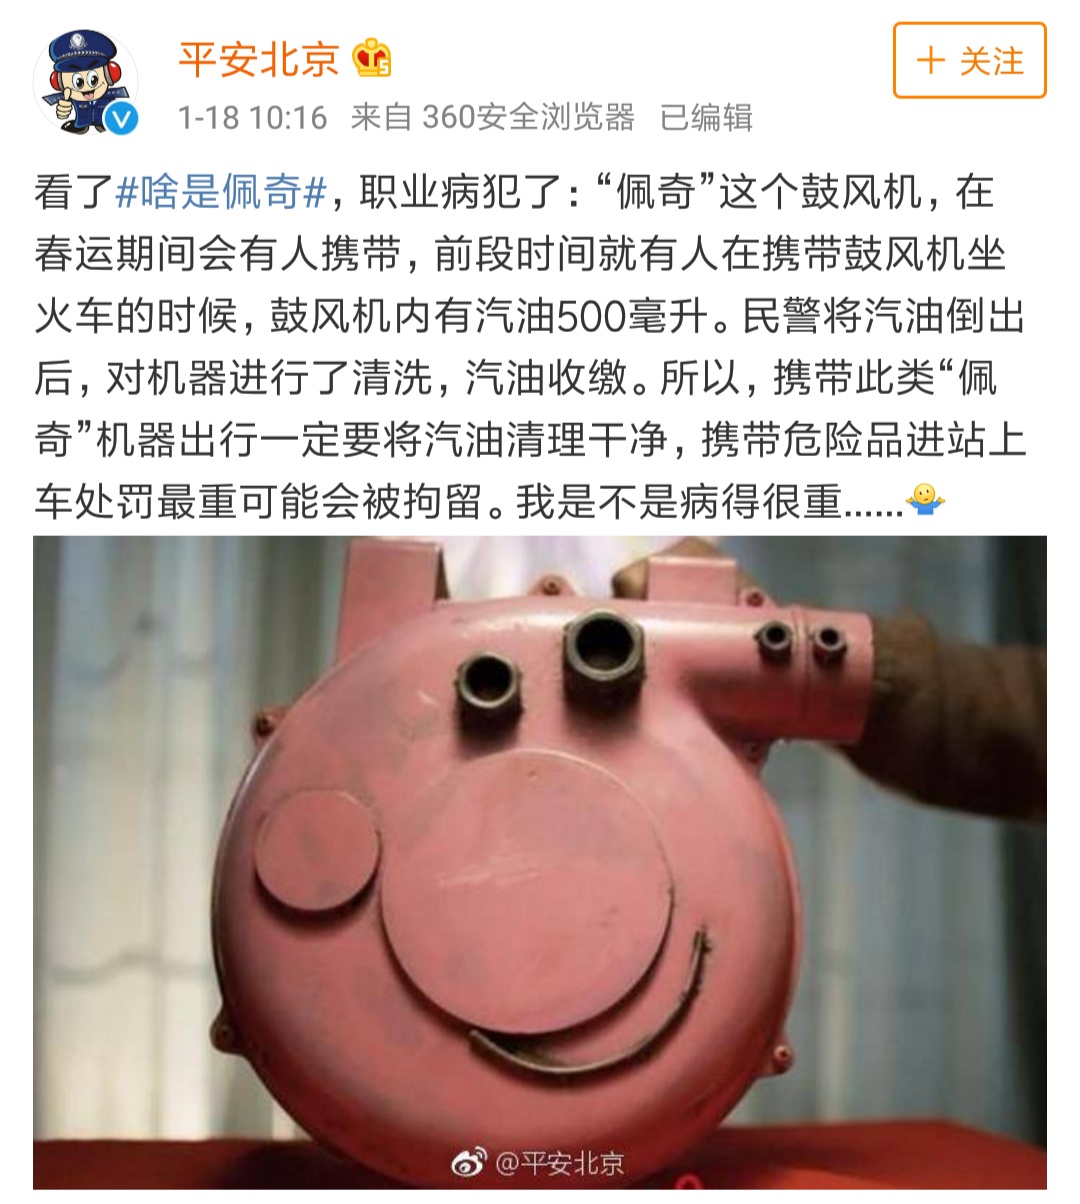 北京市公安局发微博提醒禁止携带危险品出行。微博截图